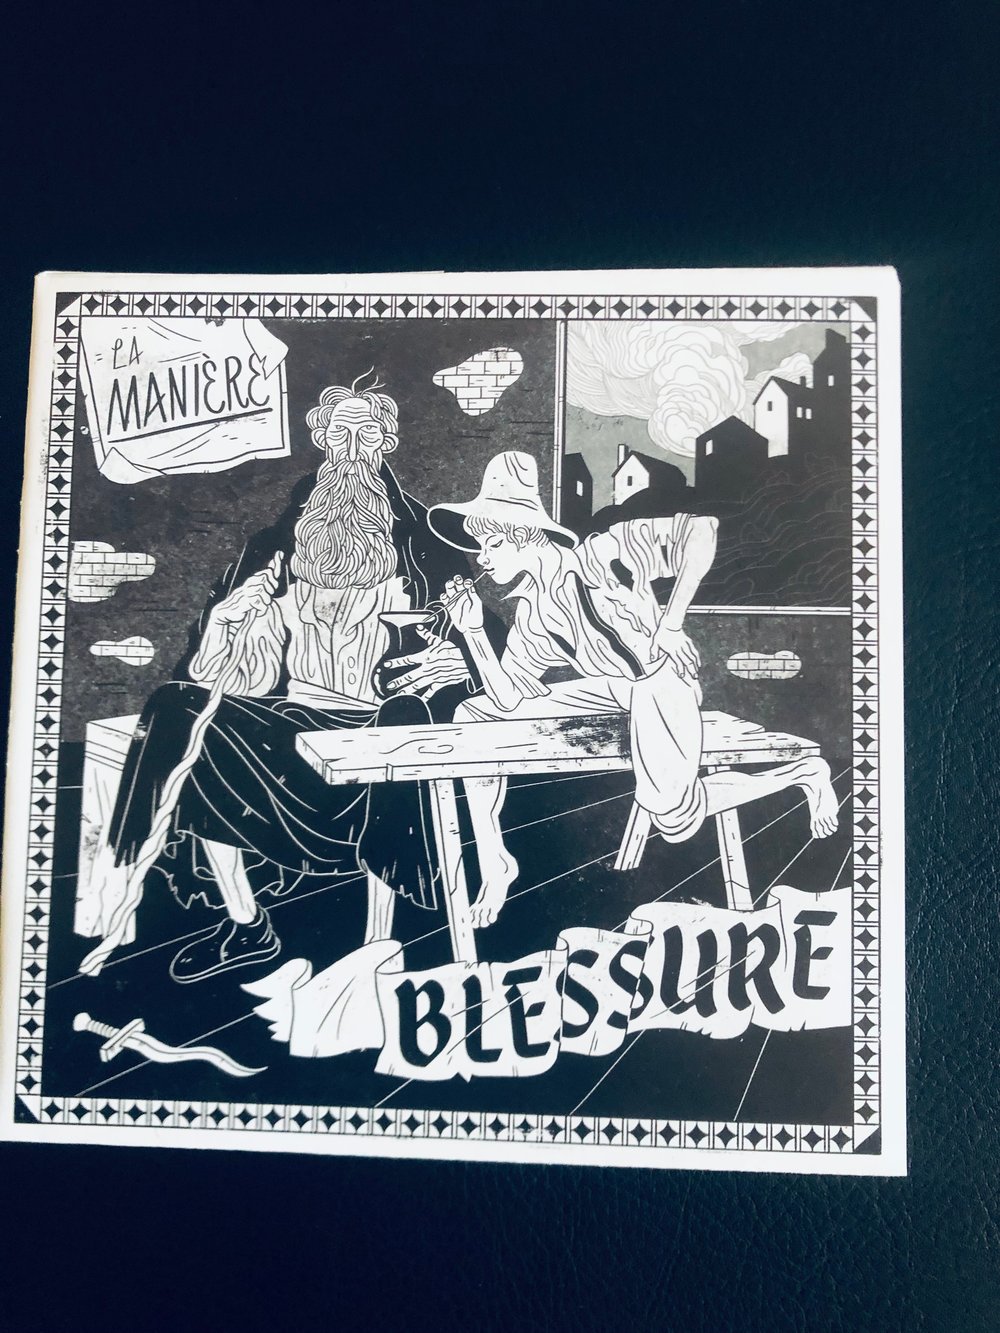 Blessure -  “La Maniere” 7" (LAST COPY!!)